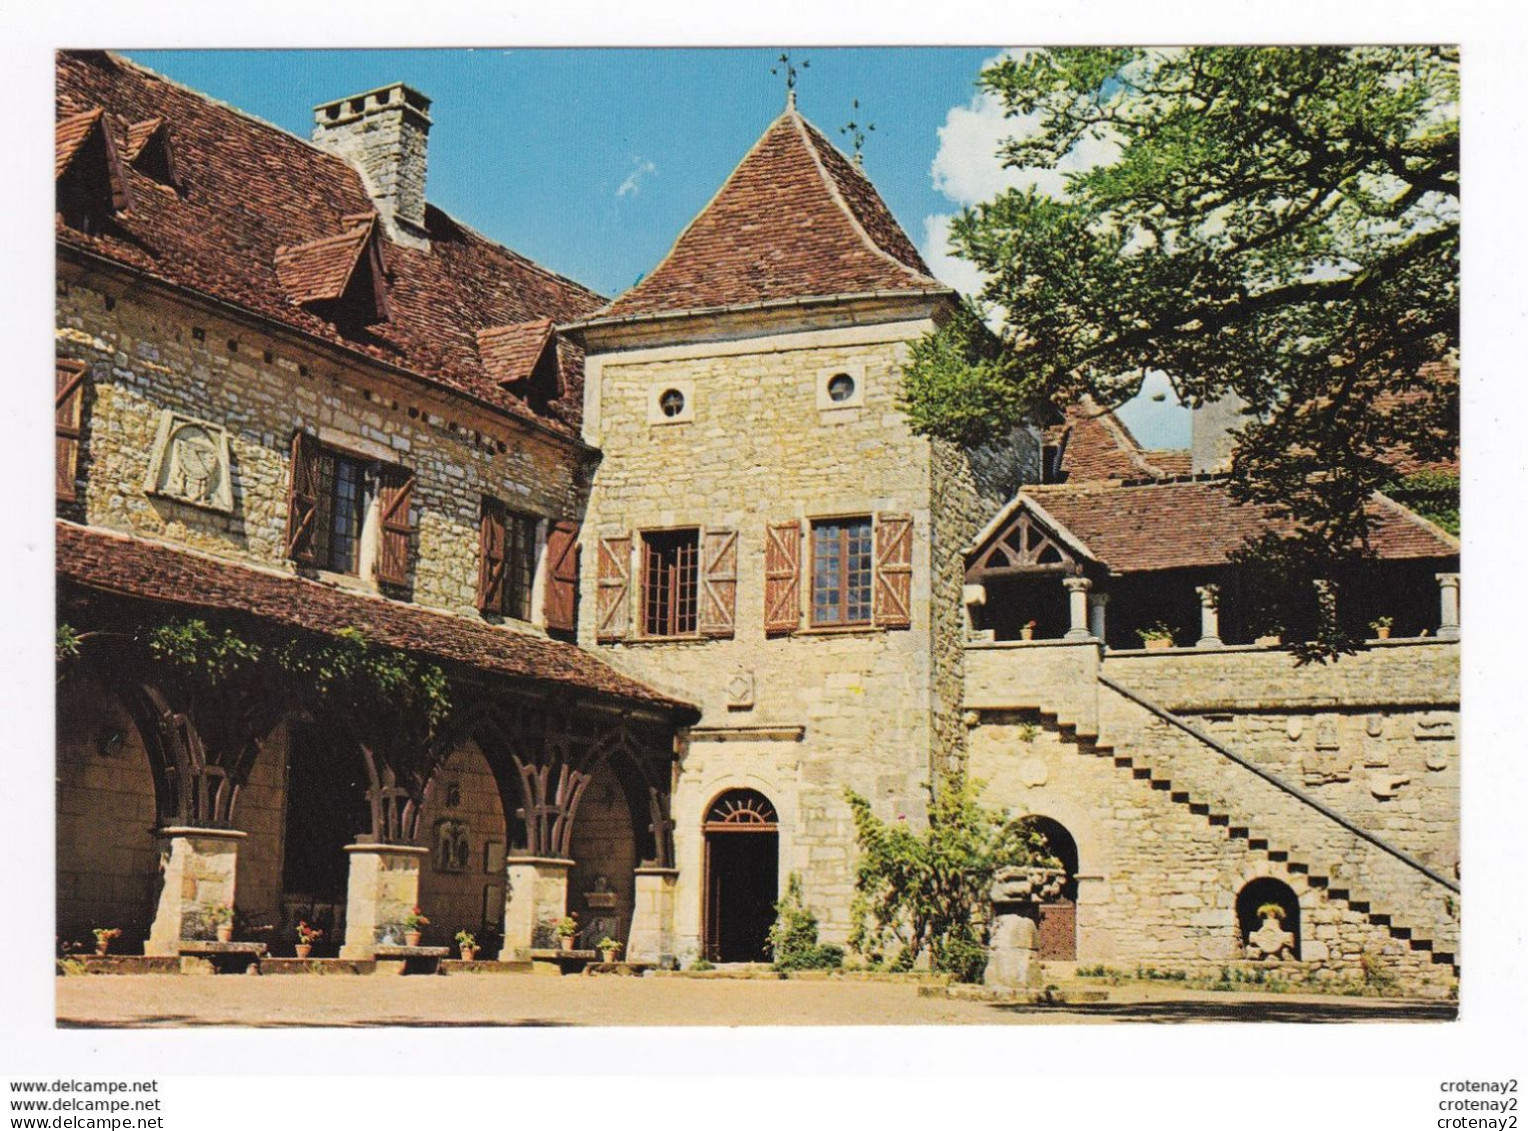 46 LOUBRESSAC Vers St Céré Bretenoux Padirac N°141 Le Château Cour Intérieure VOIR DOS En 1978 - Saint-Céré